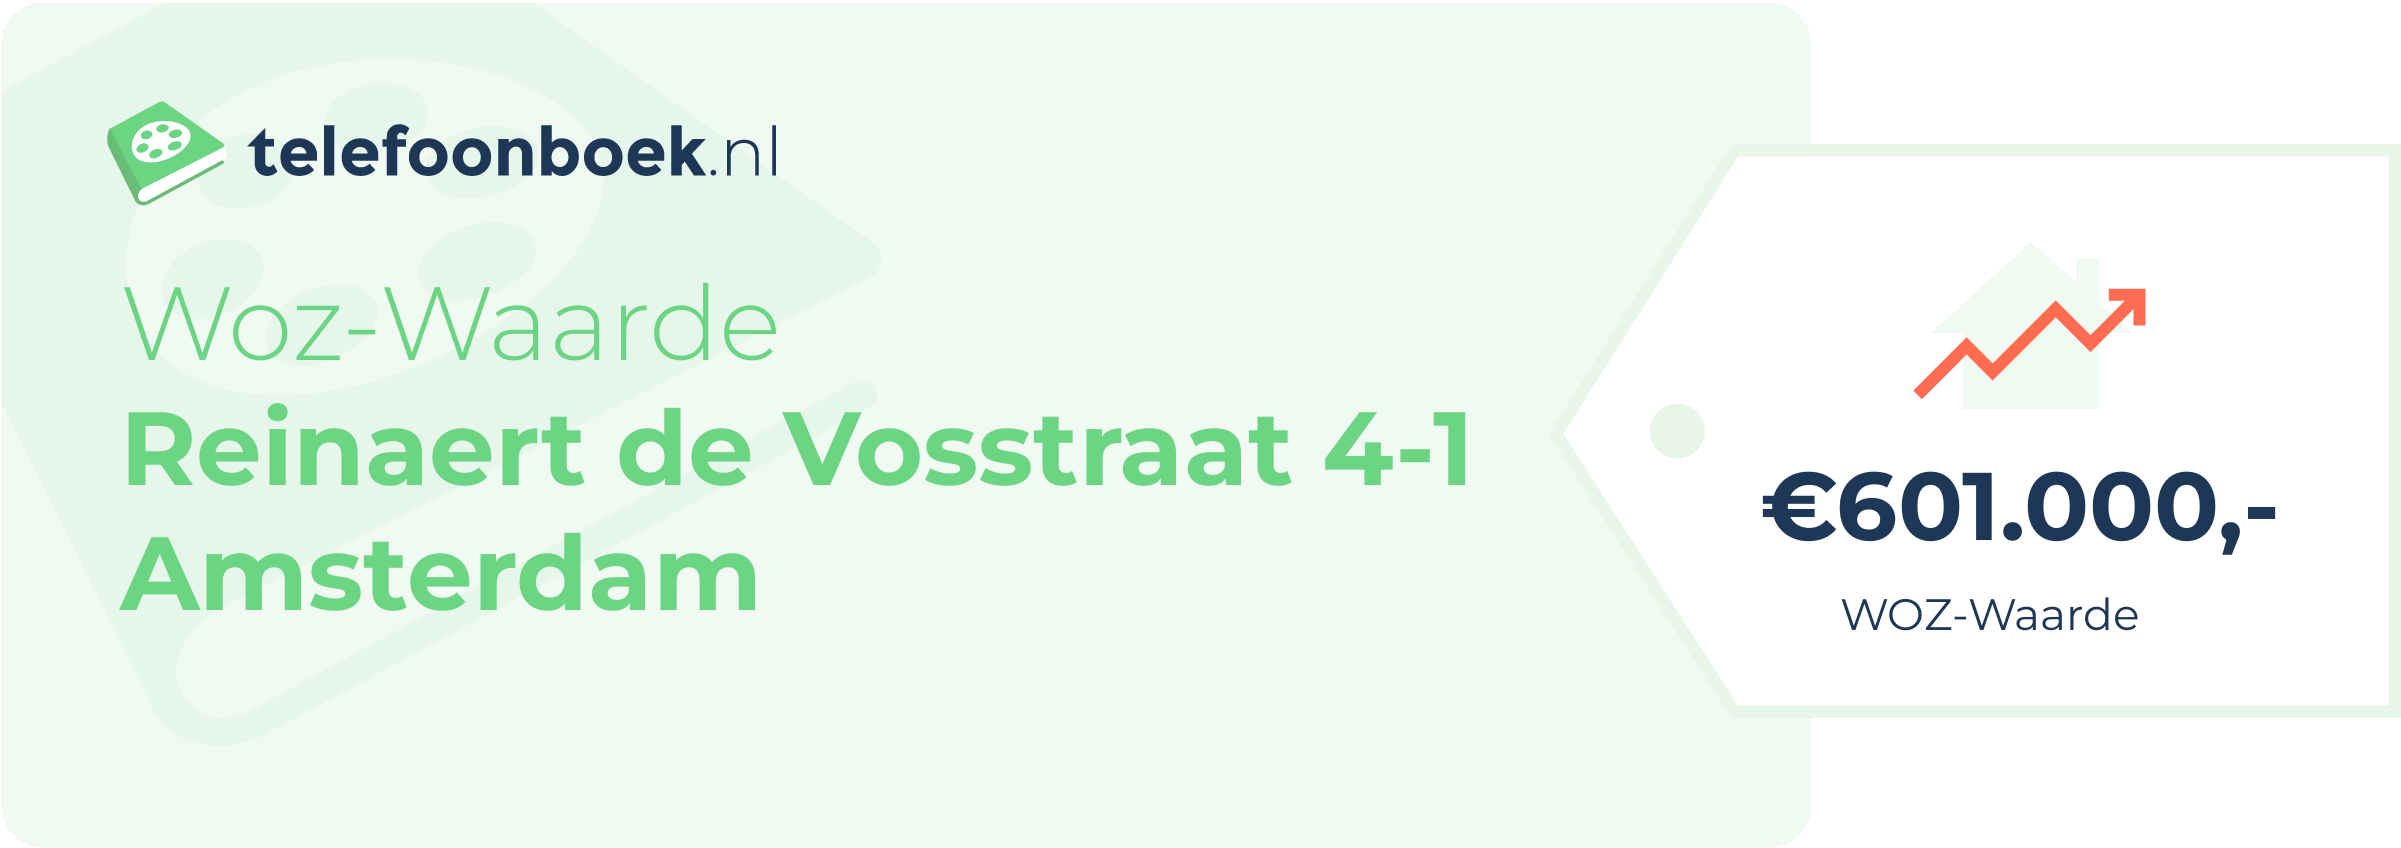 WOZ-waarde Reinaert De Vosstraat 4-1 Amsterdam